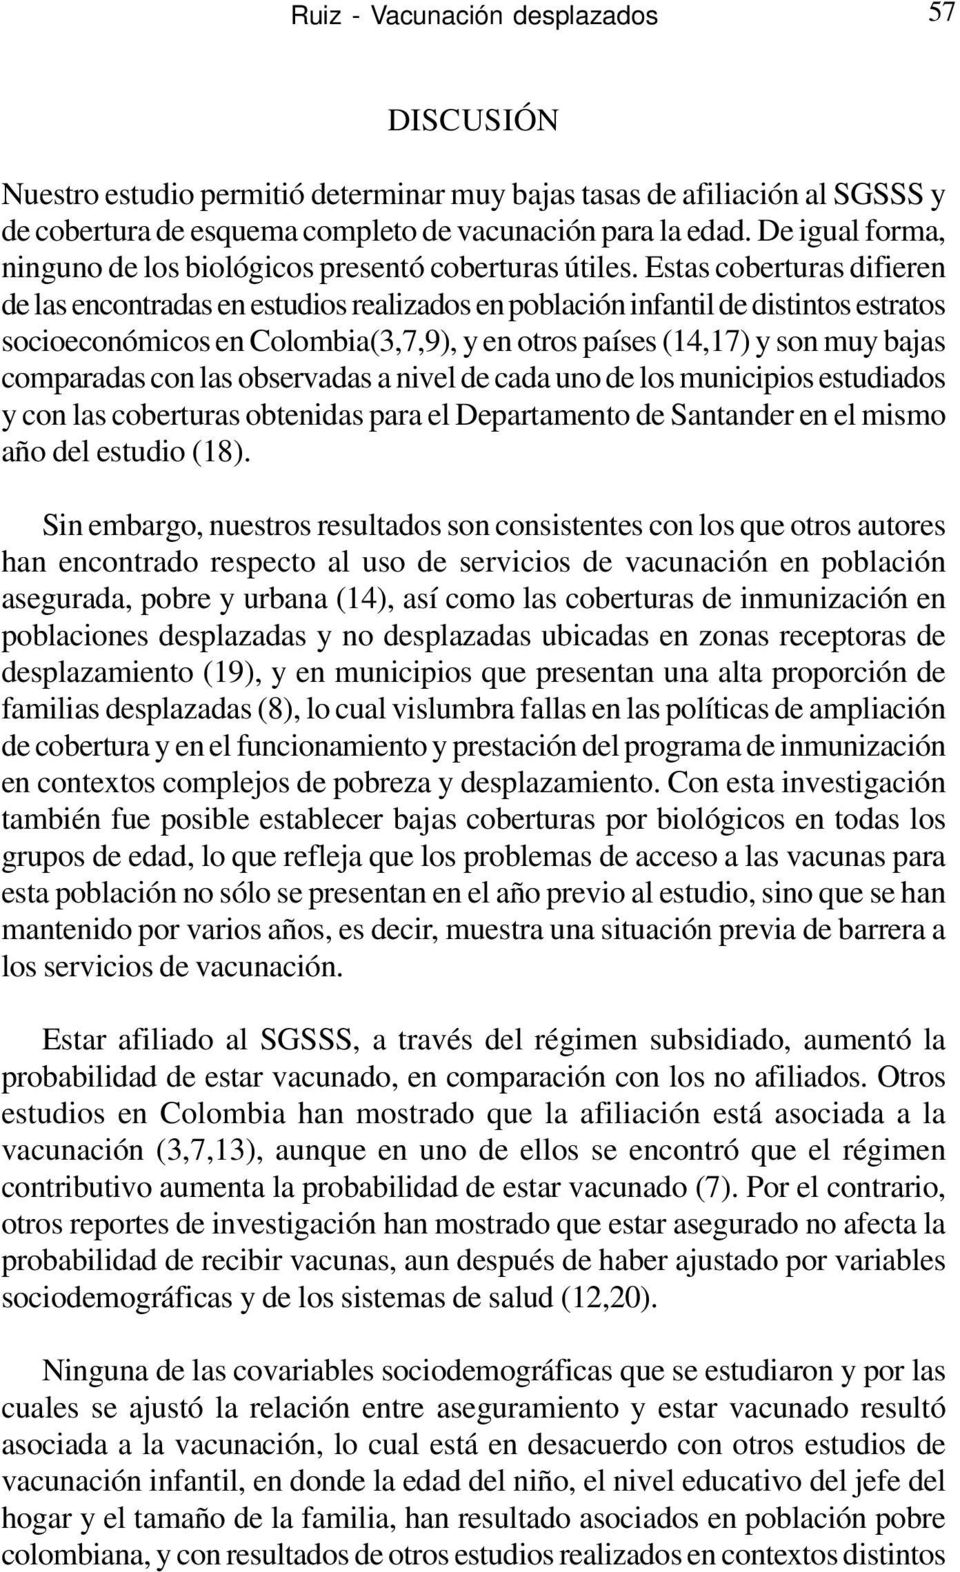 Estas coberturas difieren de las encontradas en estudios realizados en población infantil de distintos estratos socioeconómicos en Colombia(3,7,9), y en otros países (14,17) y son muy bajas